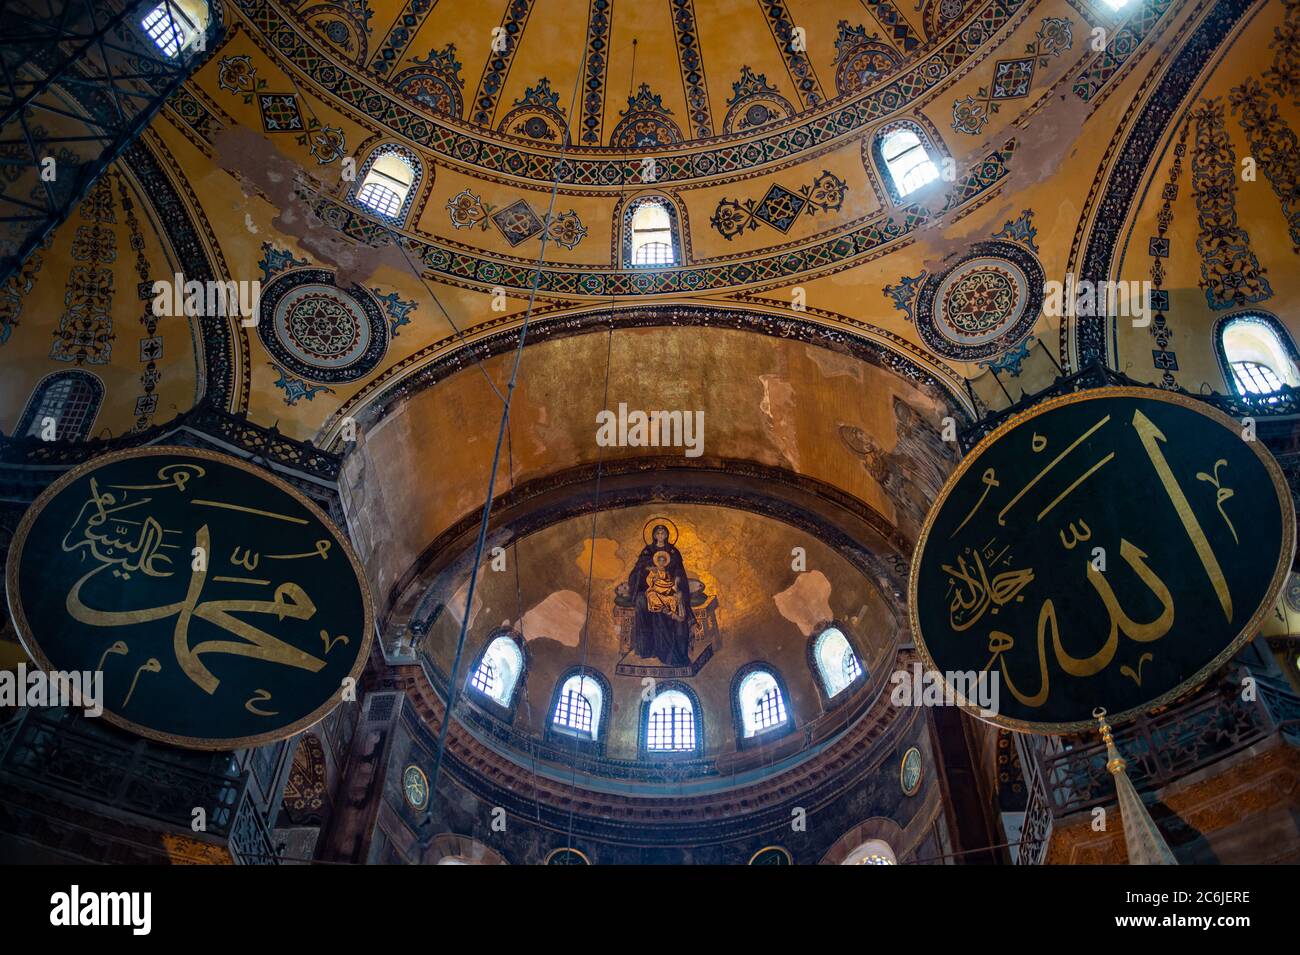 10 de julio de 2020, Turquía, Estambul: Un mosaico que representa a la Madre  Cristiana de Dios con el Niño Jesús se puede ver entre los personajes  islámicos en la Basílica de